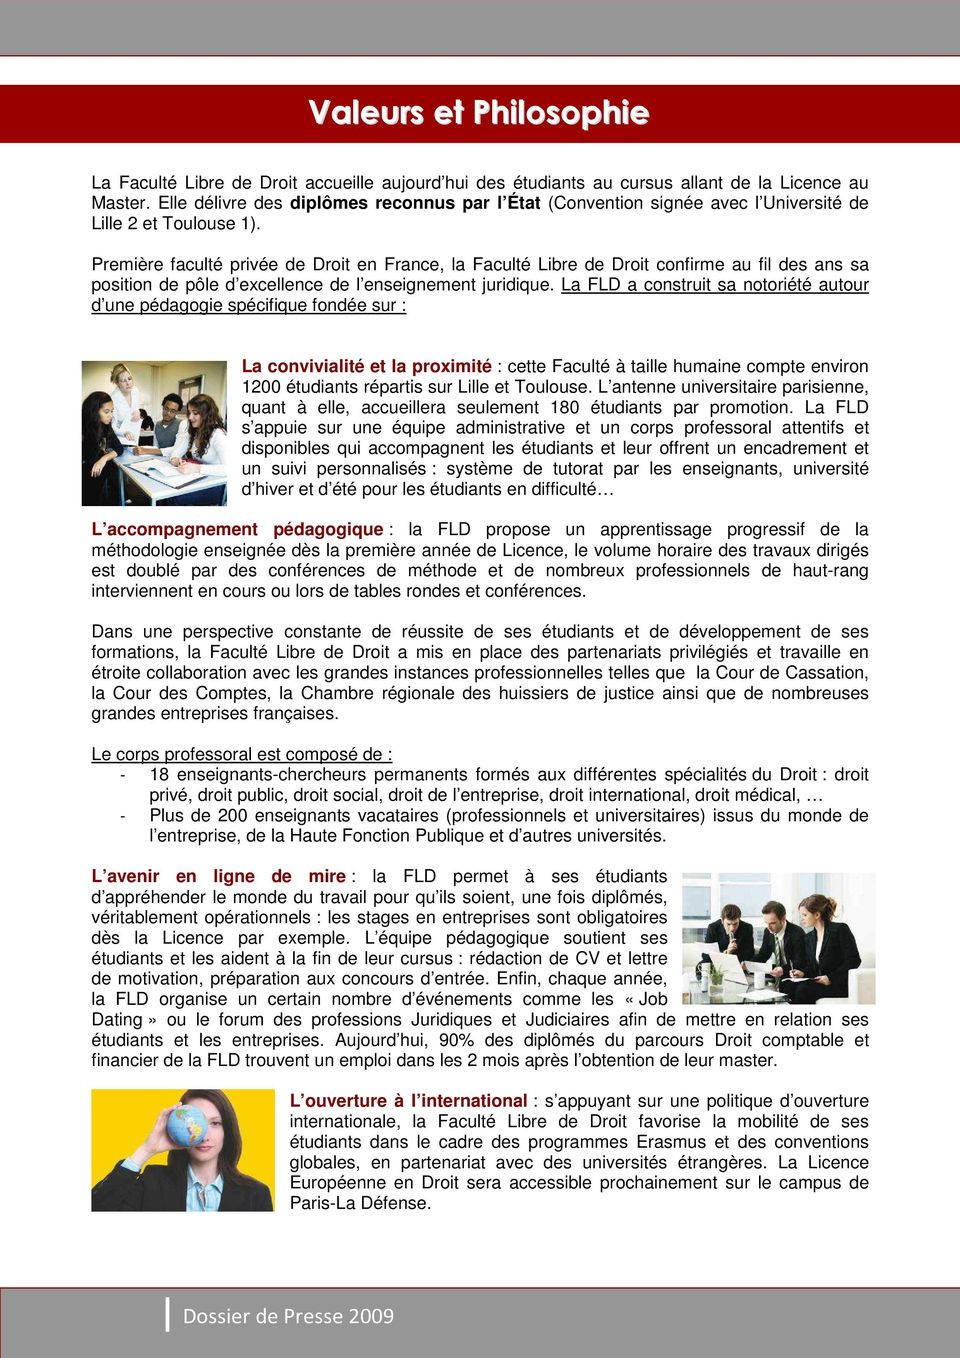 Première faculté privée de Droit en France, la Faculté Libre de Droit confirme au fil des ans sa position de pôle d excellence de l enseignement juridique.